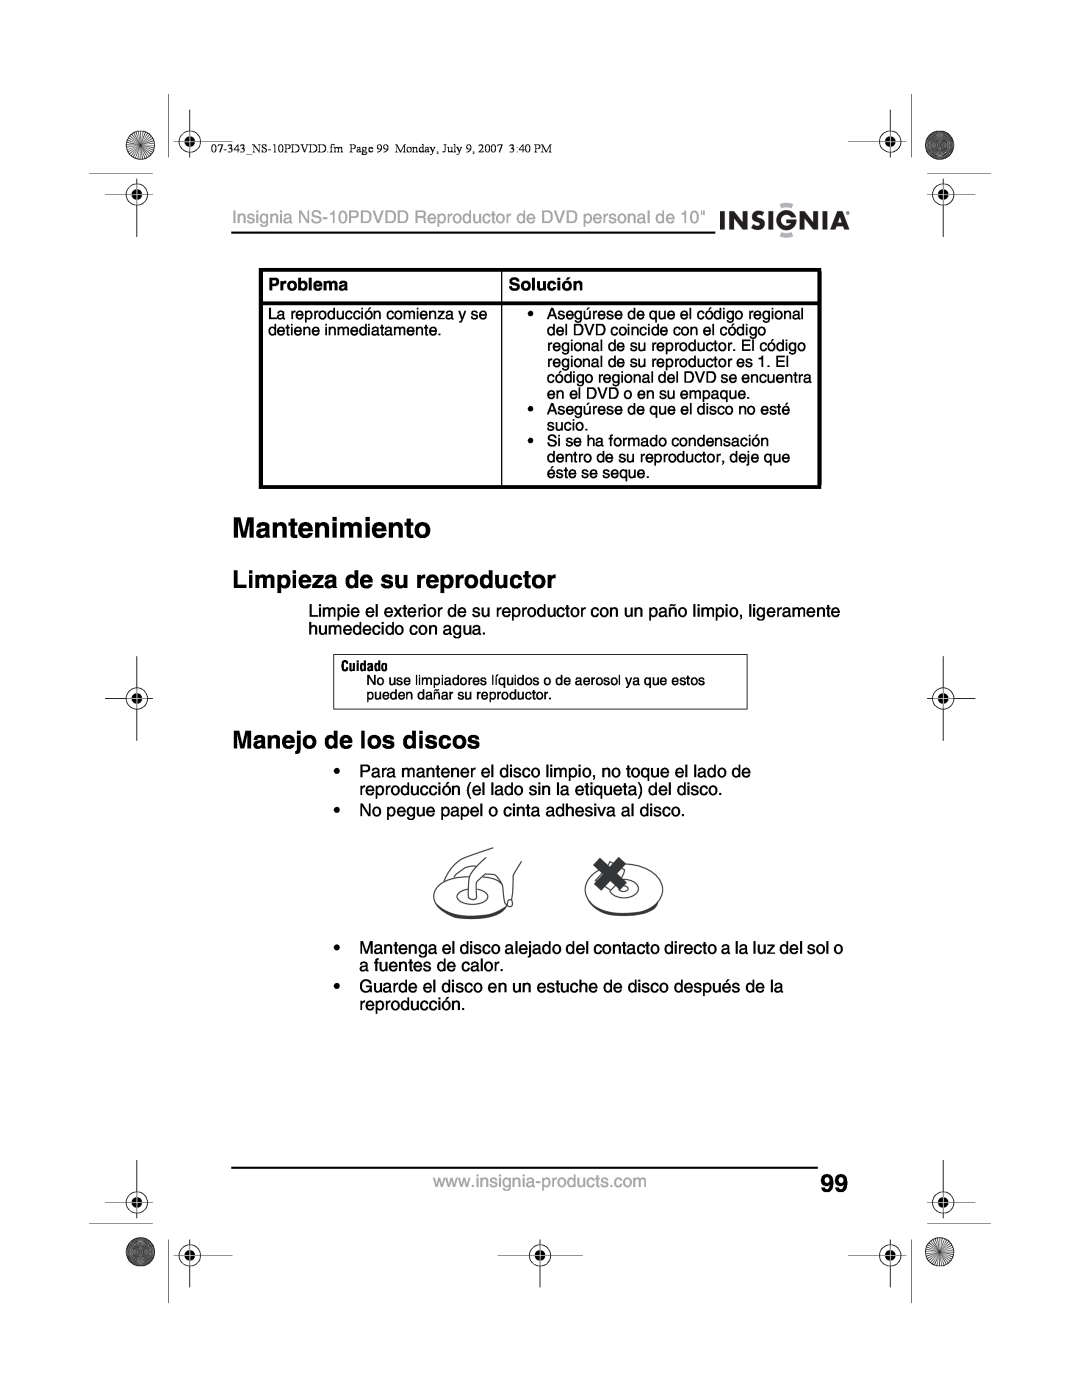 Insignia NS-10PDVDD manual Mantenimiento, Limpieza de su reproductor, Manejo de los discos, Problema, Solución 